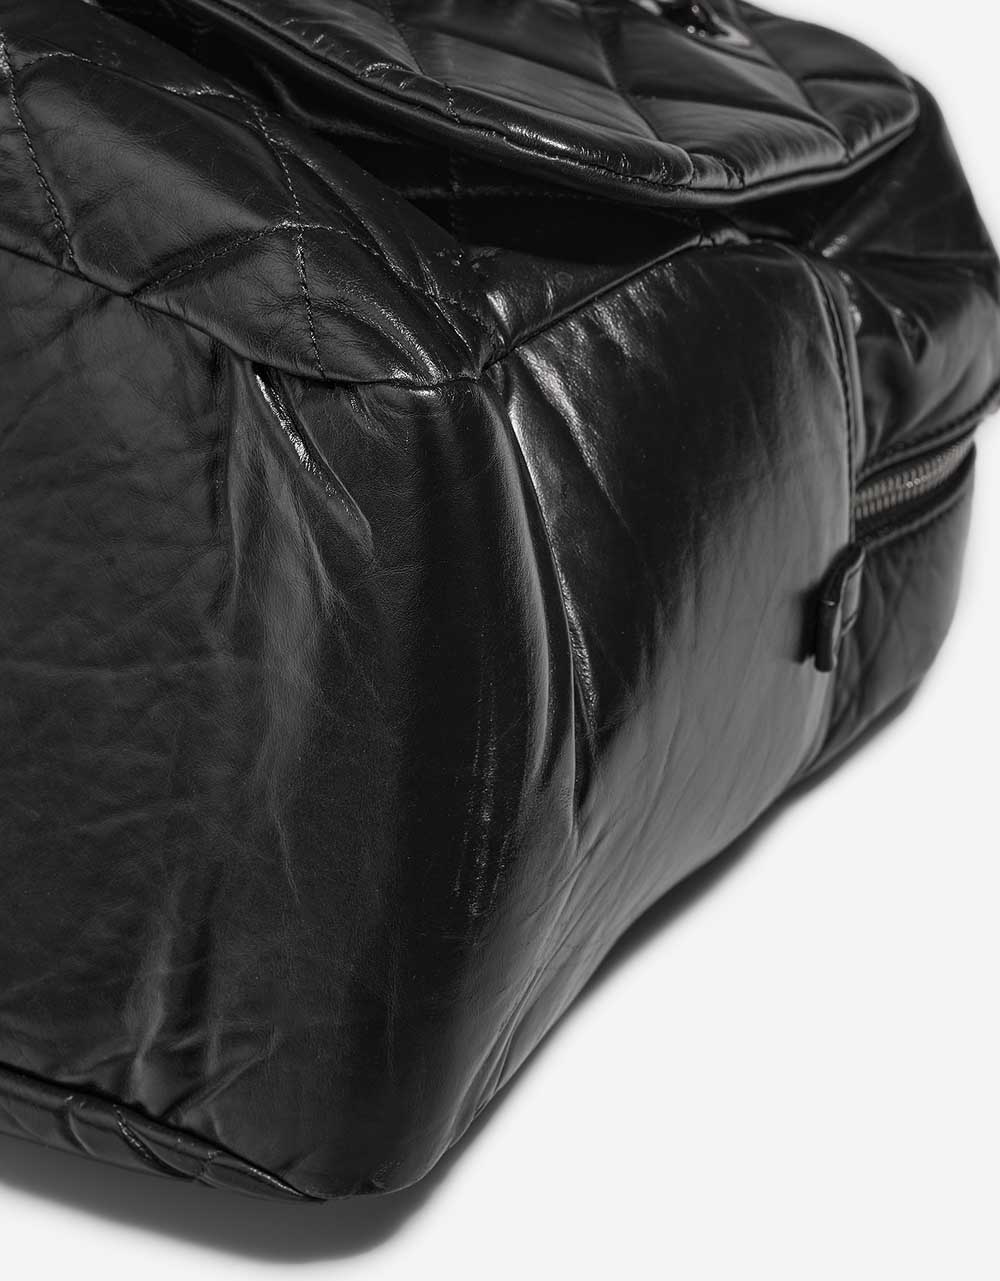 Chanel ExpressBowling Black signes d'usure | Vendez votre sac de créateur sur Saclab.com